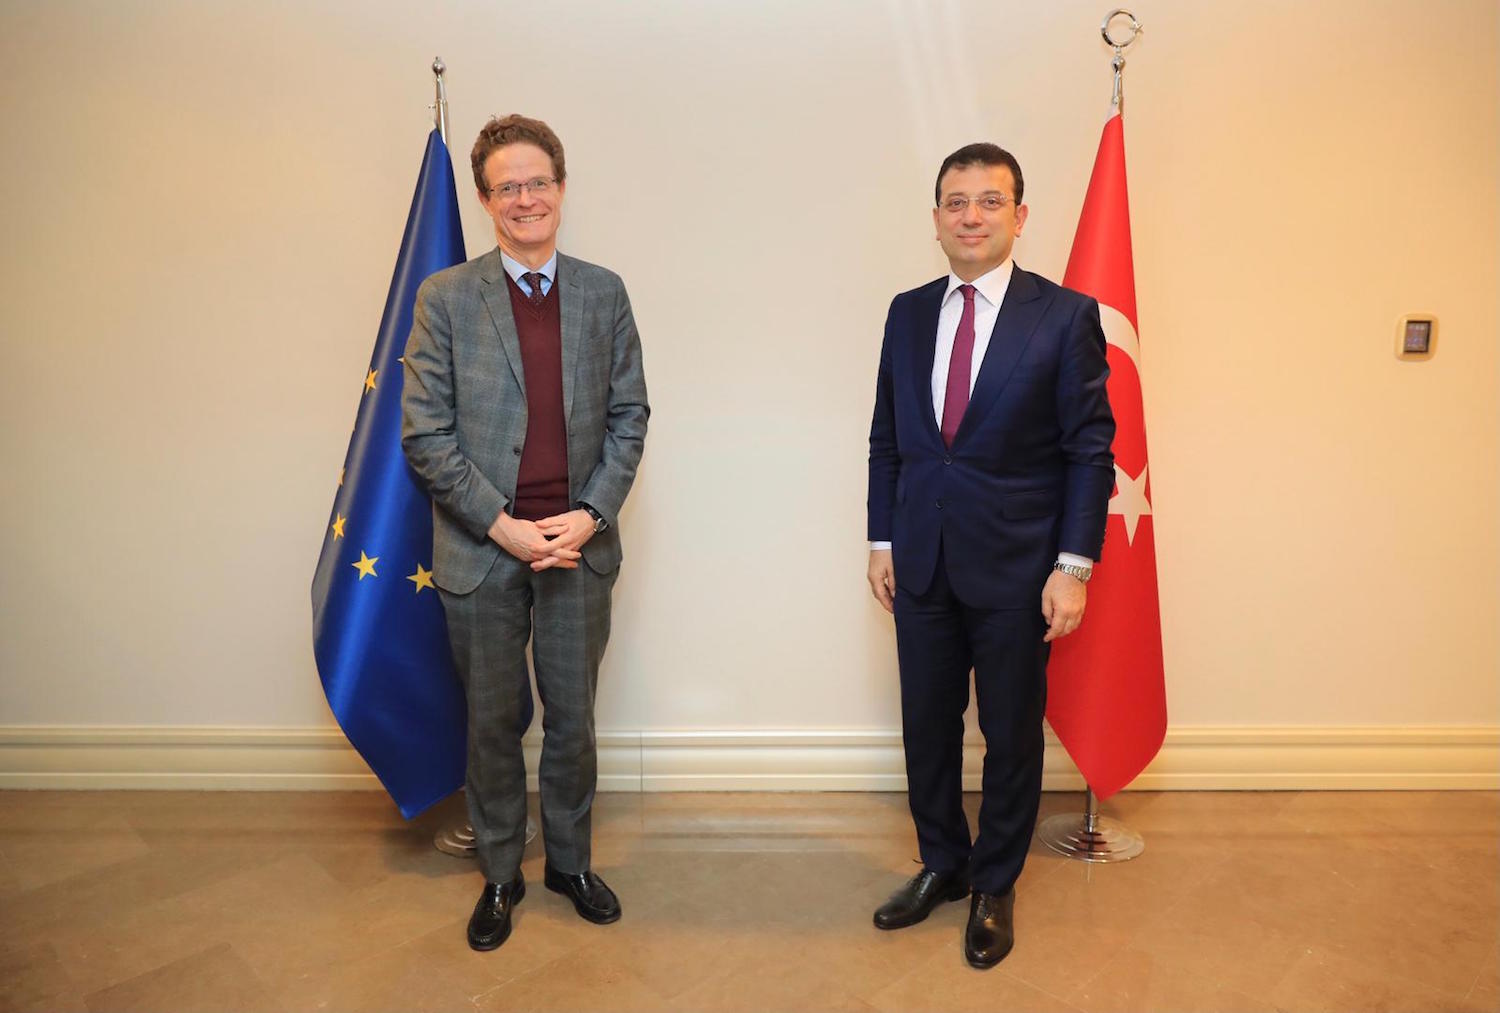 Le chef de la délagation de l’Union européenne en Turquie, Nikolaus MEYER-LANDRUT, rencontre le maire d’Istanbul, Ekrem Imamoglu, le 14 janvier 2021 © D.R.